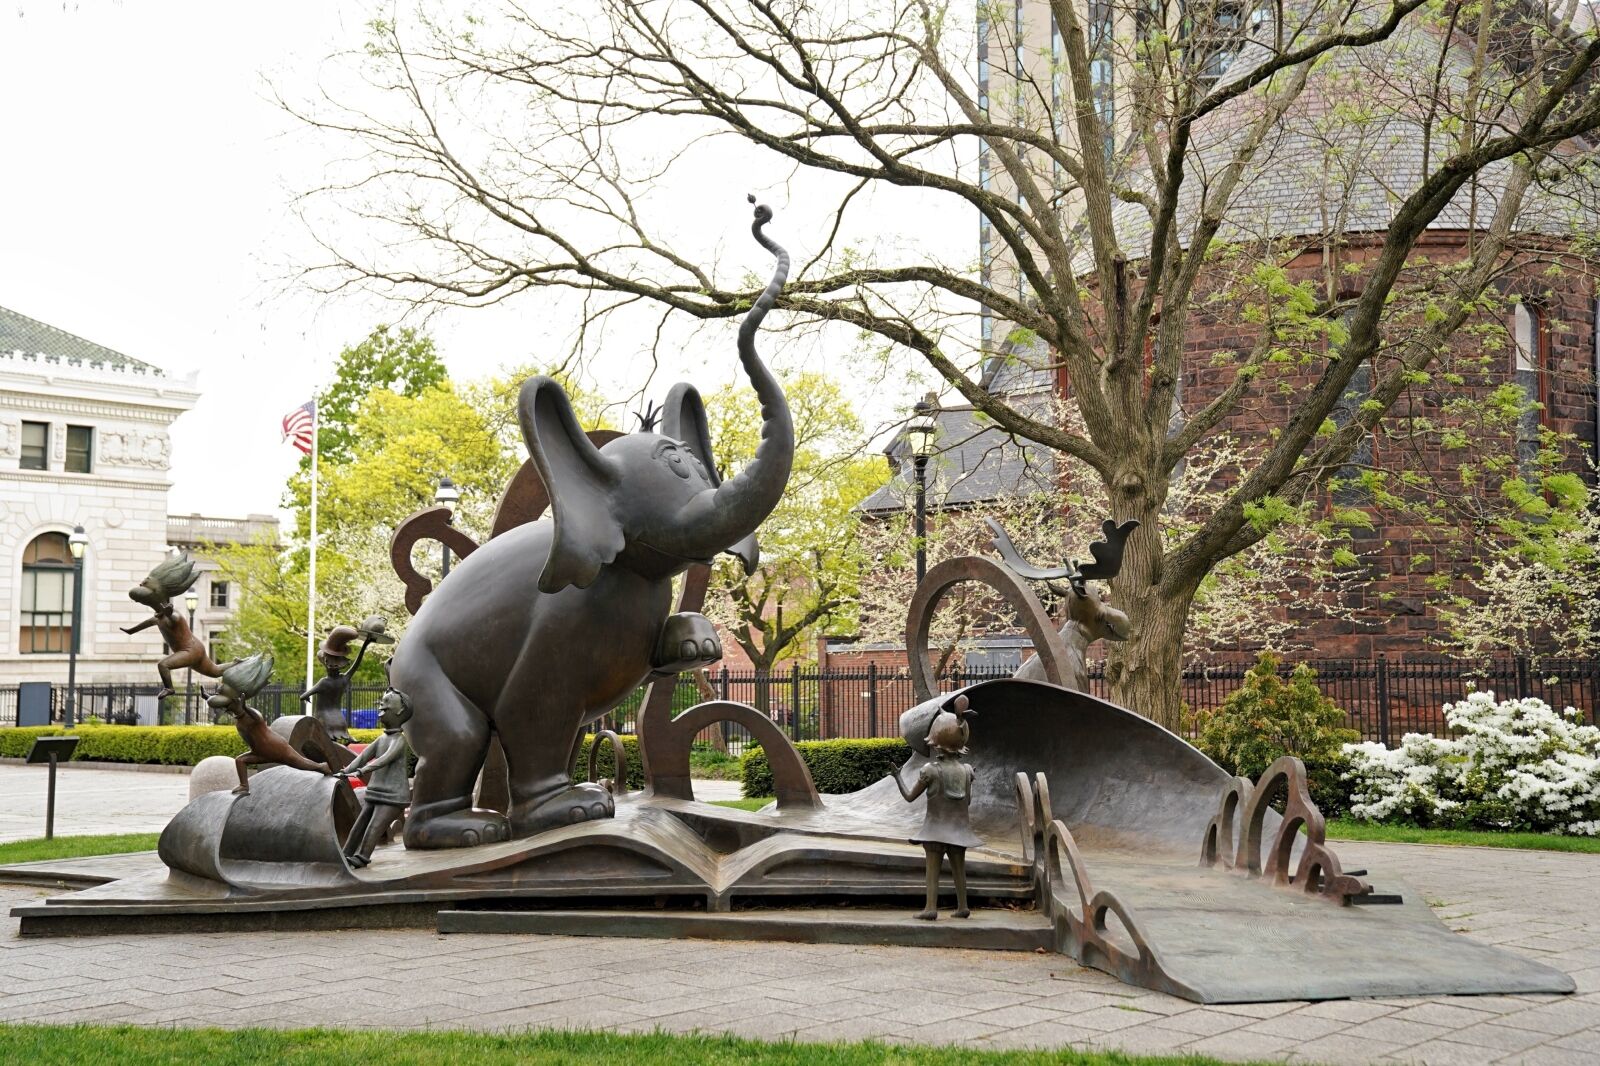 A group shot of The Horton Court sculpture at the Dr. Seuss National Memorial Sculpture Garden